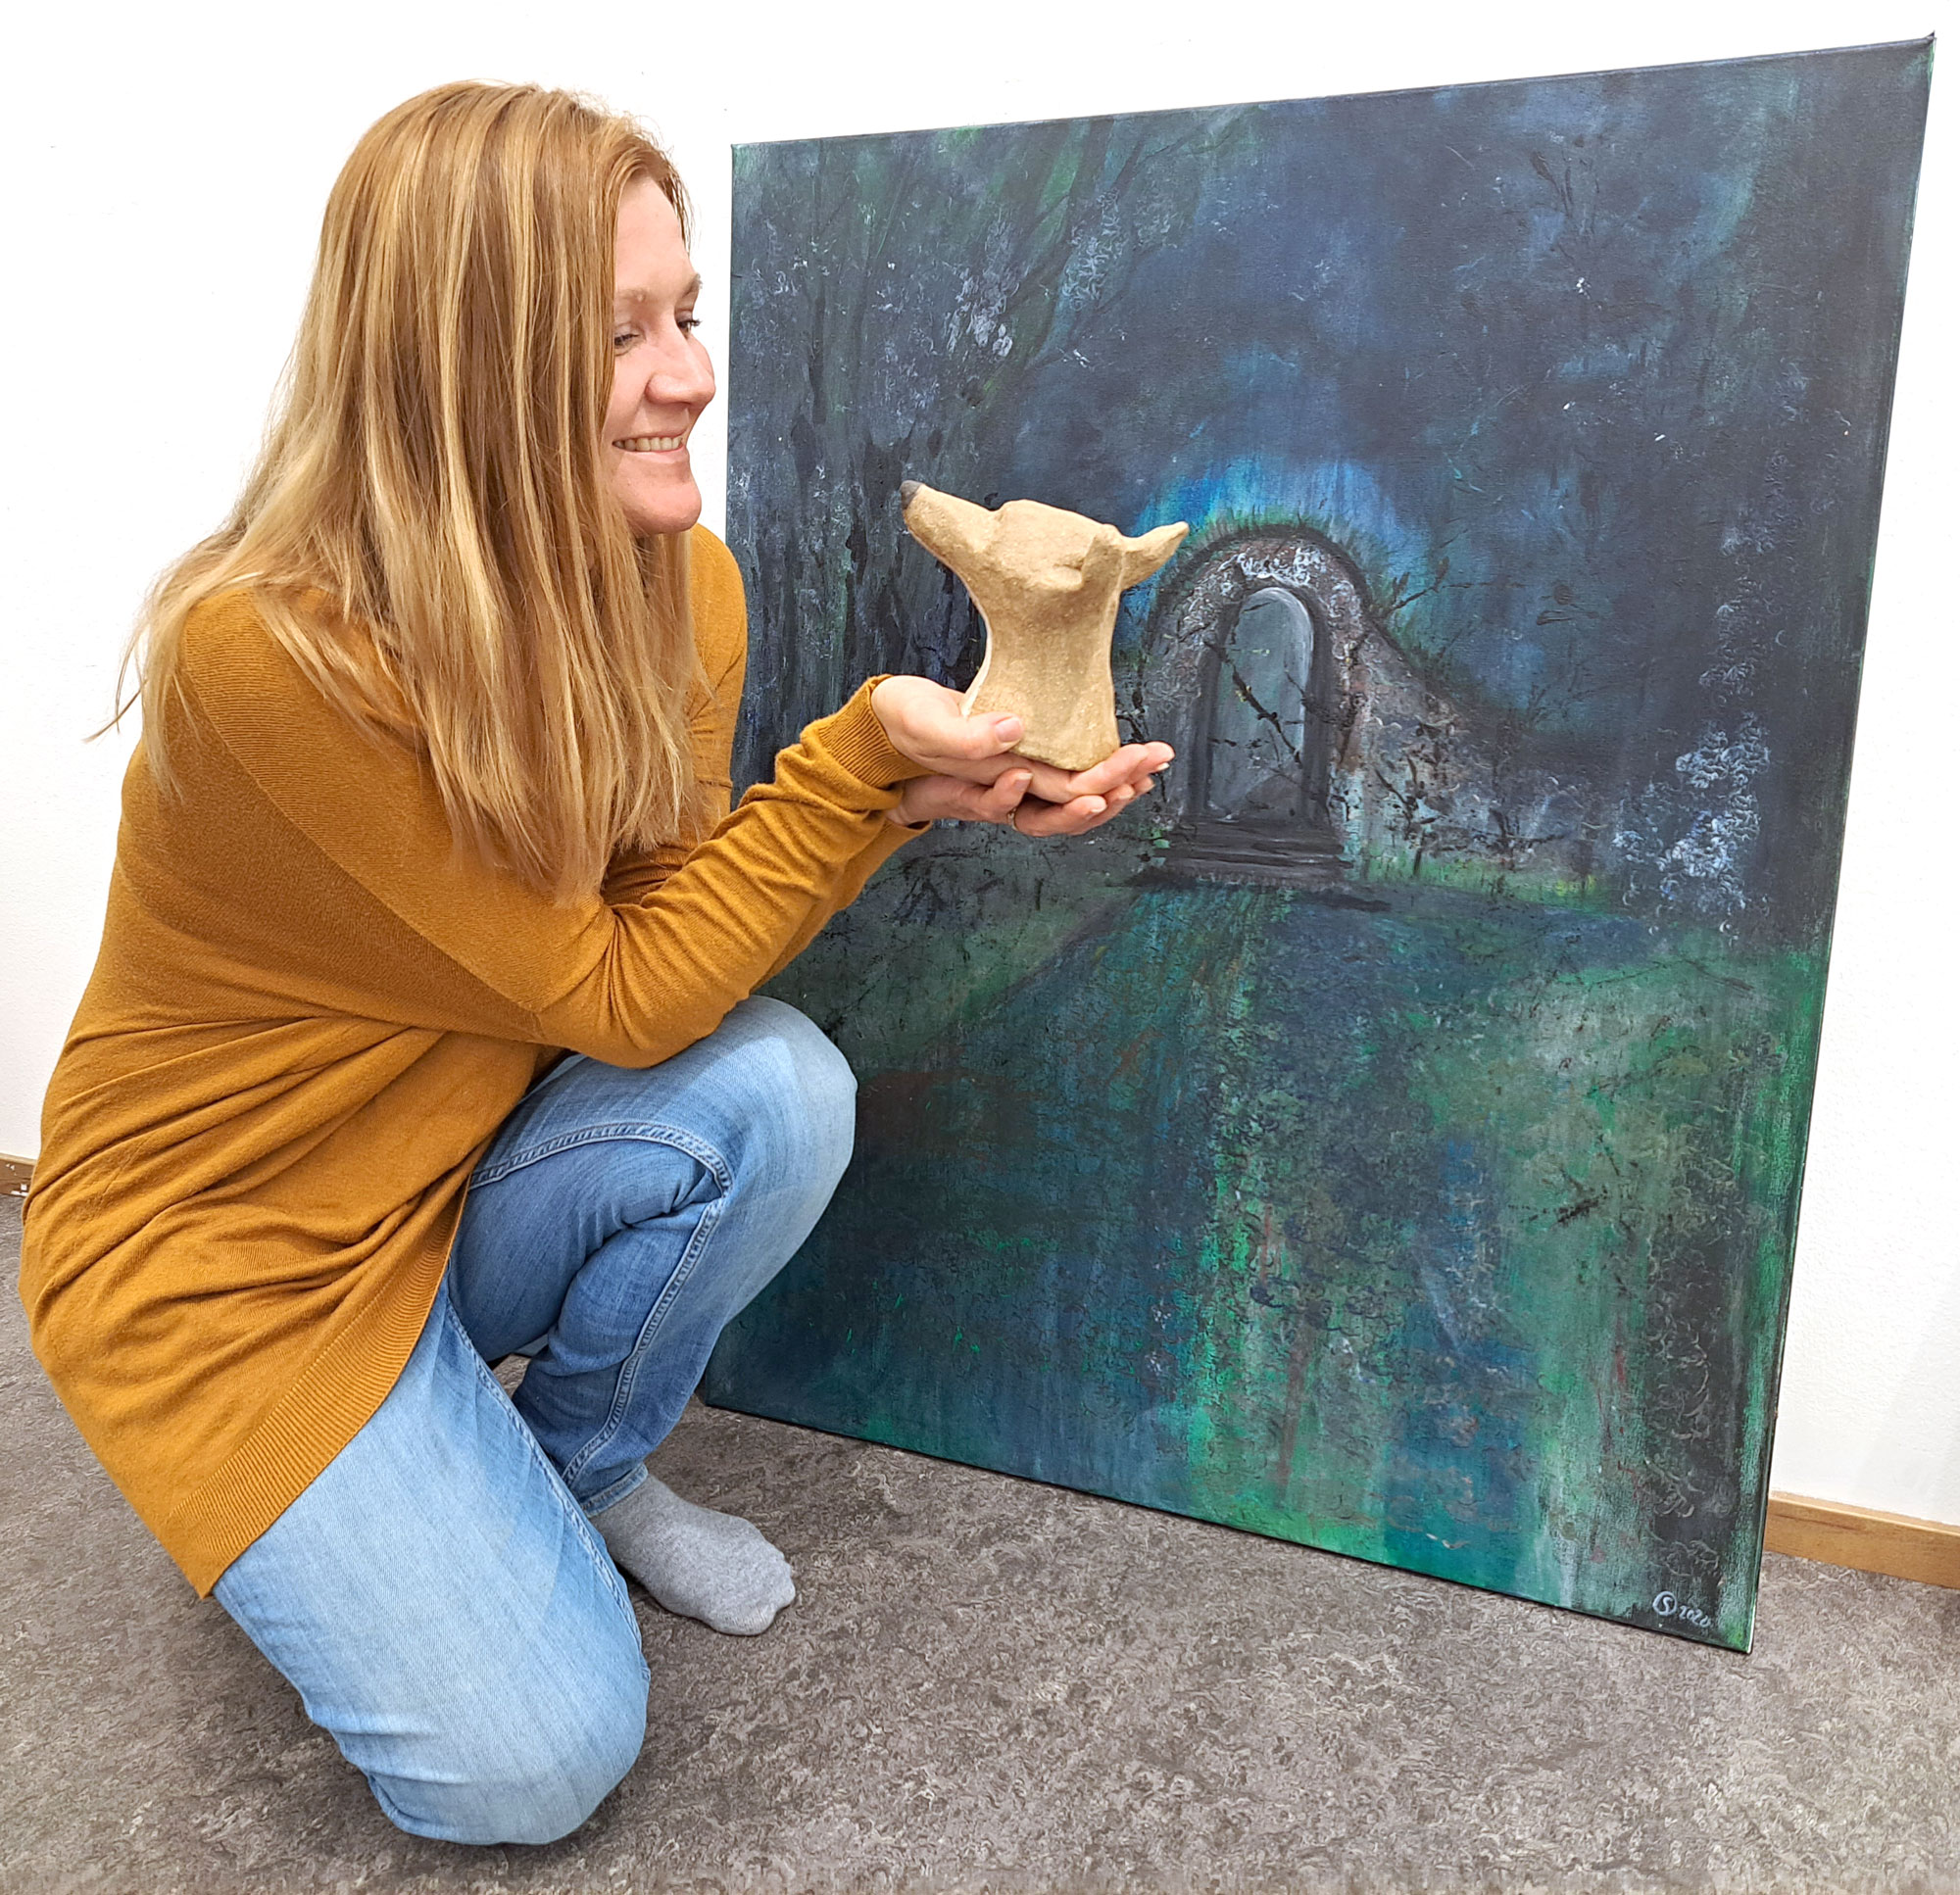 Sinisen metsän lohtu -näyttely koostuu Sari Orpanan teoksista, joissa hän on hyödyntänyt erilaisia itseään kiinnostavia materiaaleja ja tekniikoita. Taustalla teos nimeltään Siirtymä.